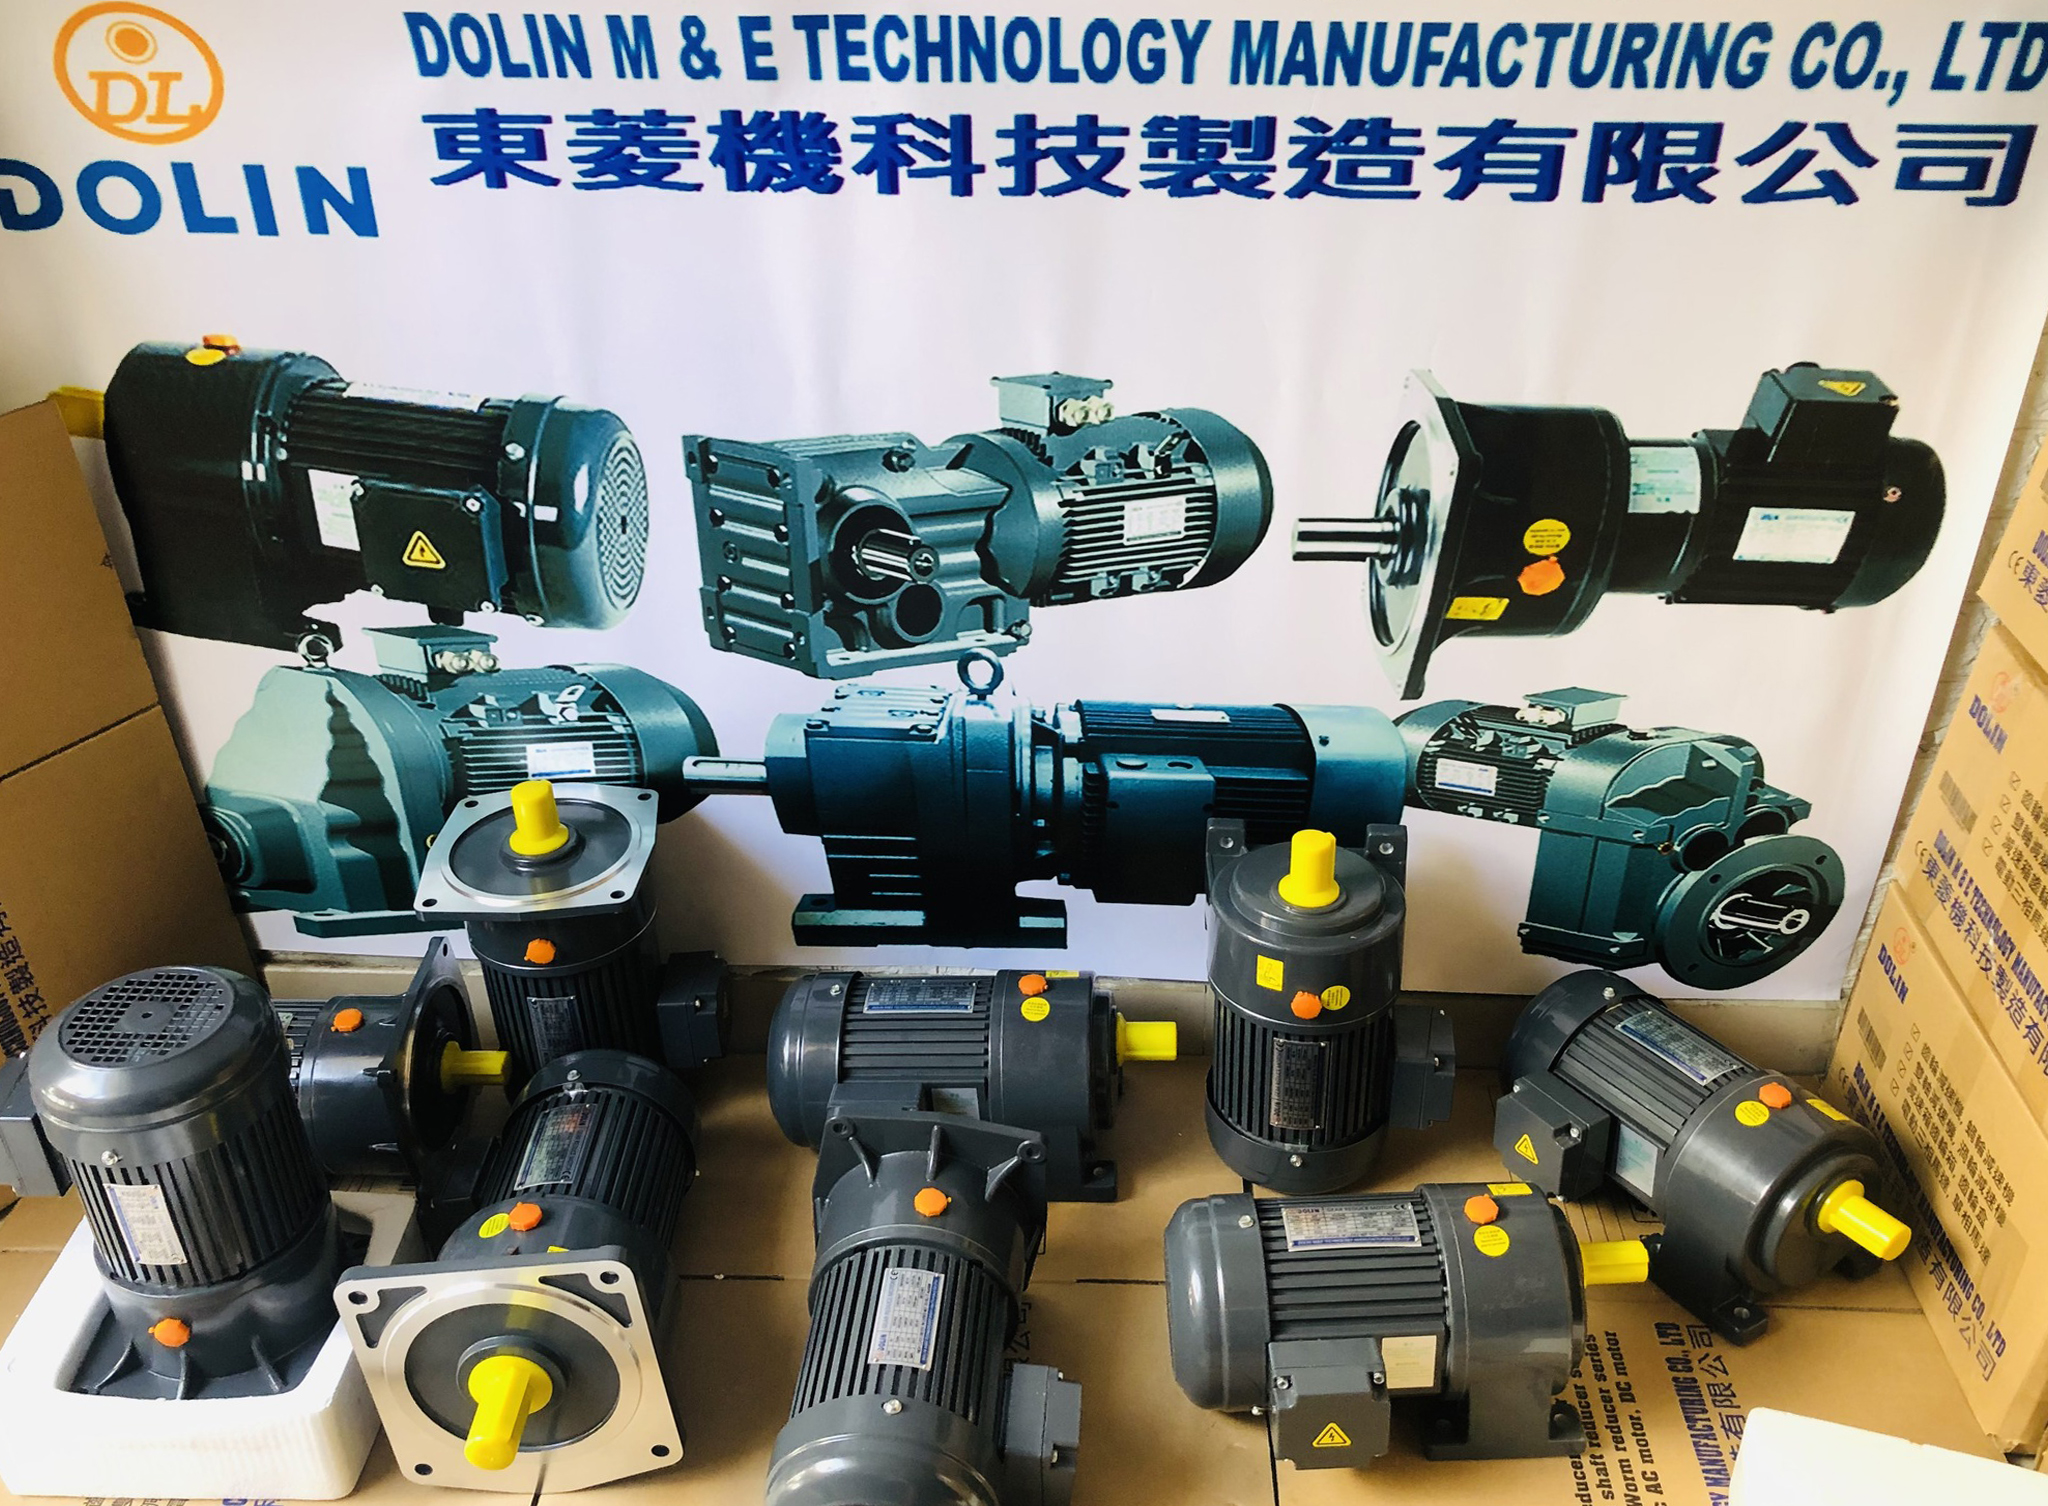 東菱(Dolin)宣布將電動馬達工廠從台灣遷往越南